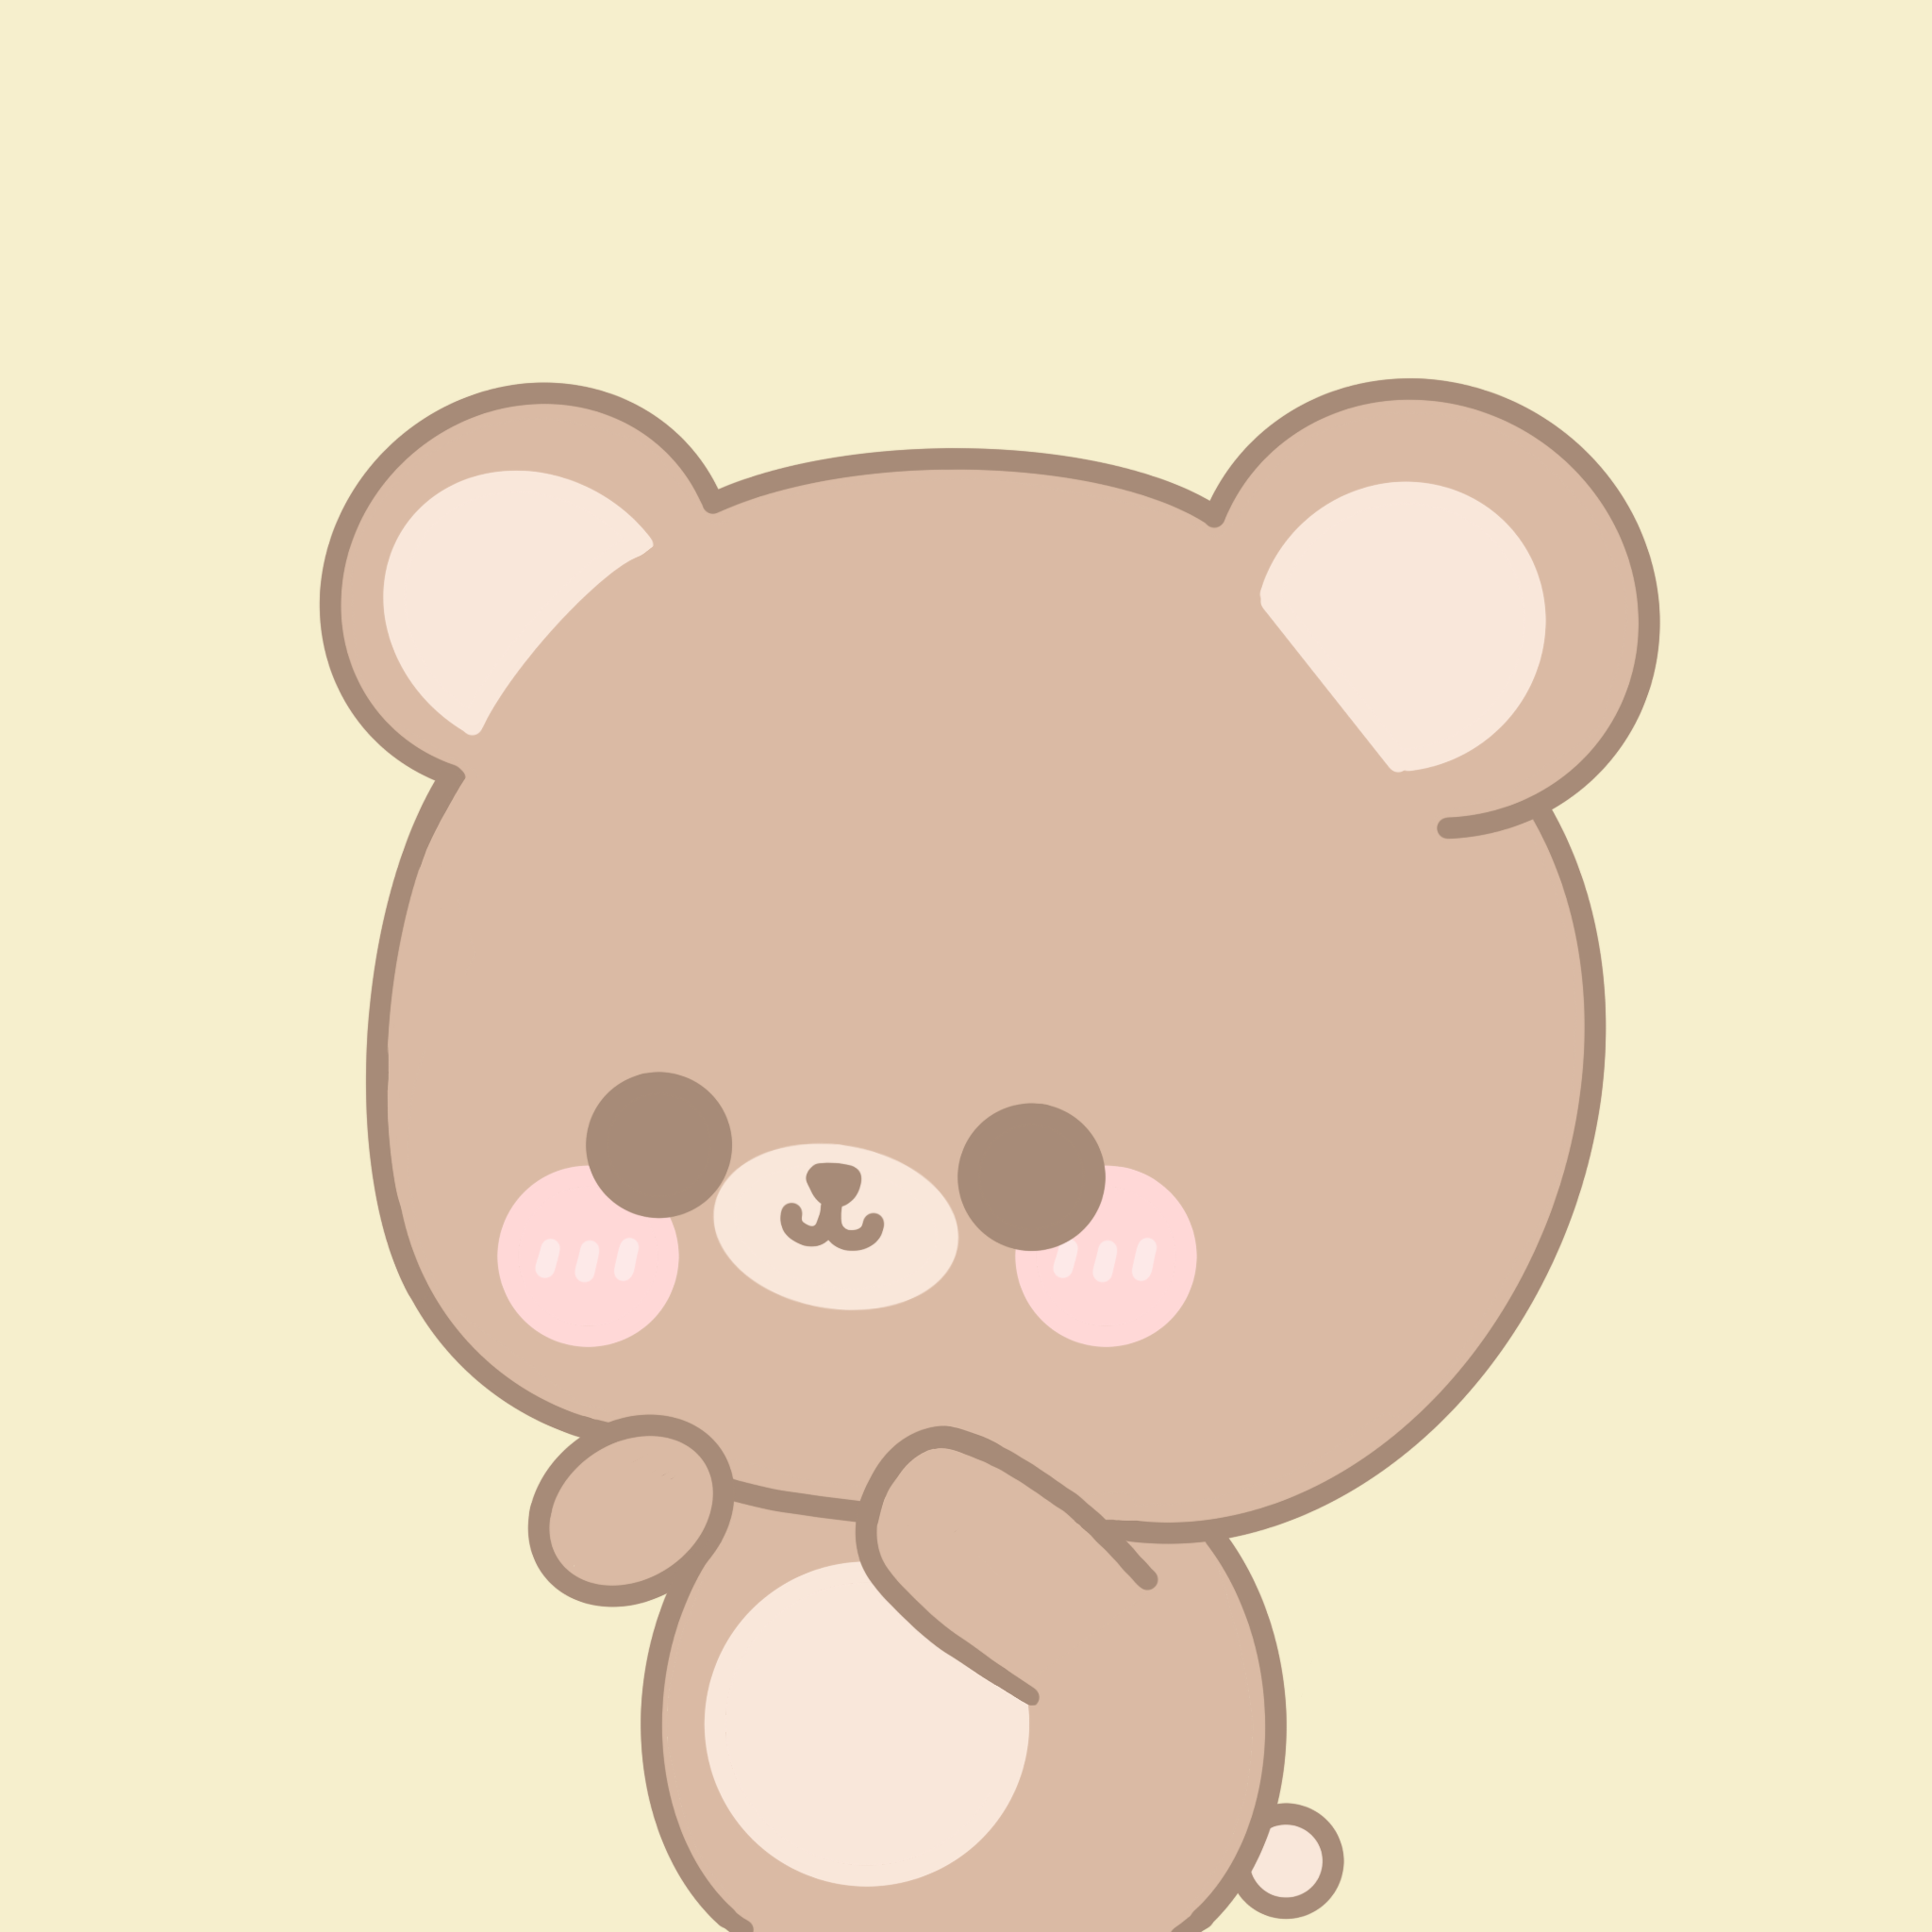 Download Teddy Bear, Stuffed Toy, Cartoon Teddy Bear. Royalty-Free